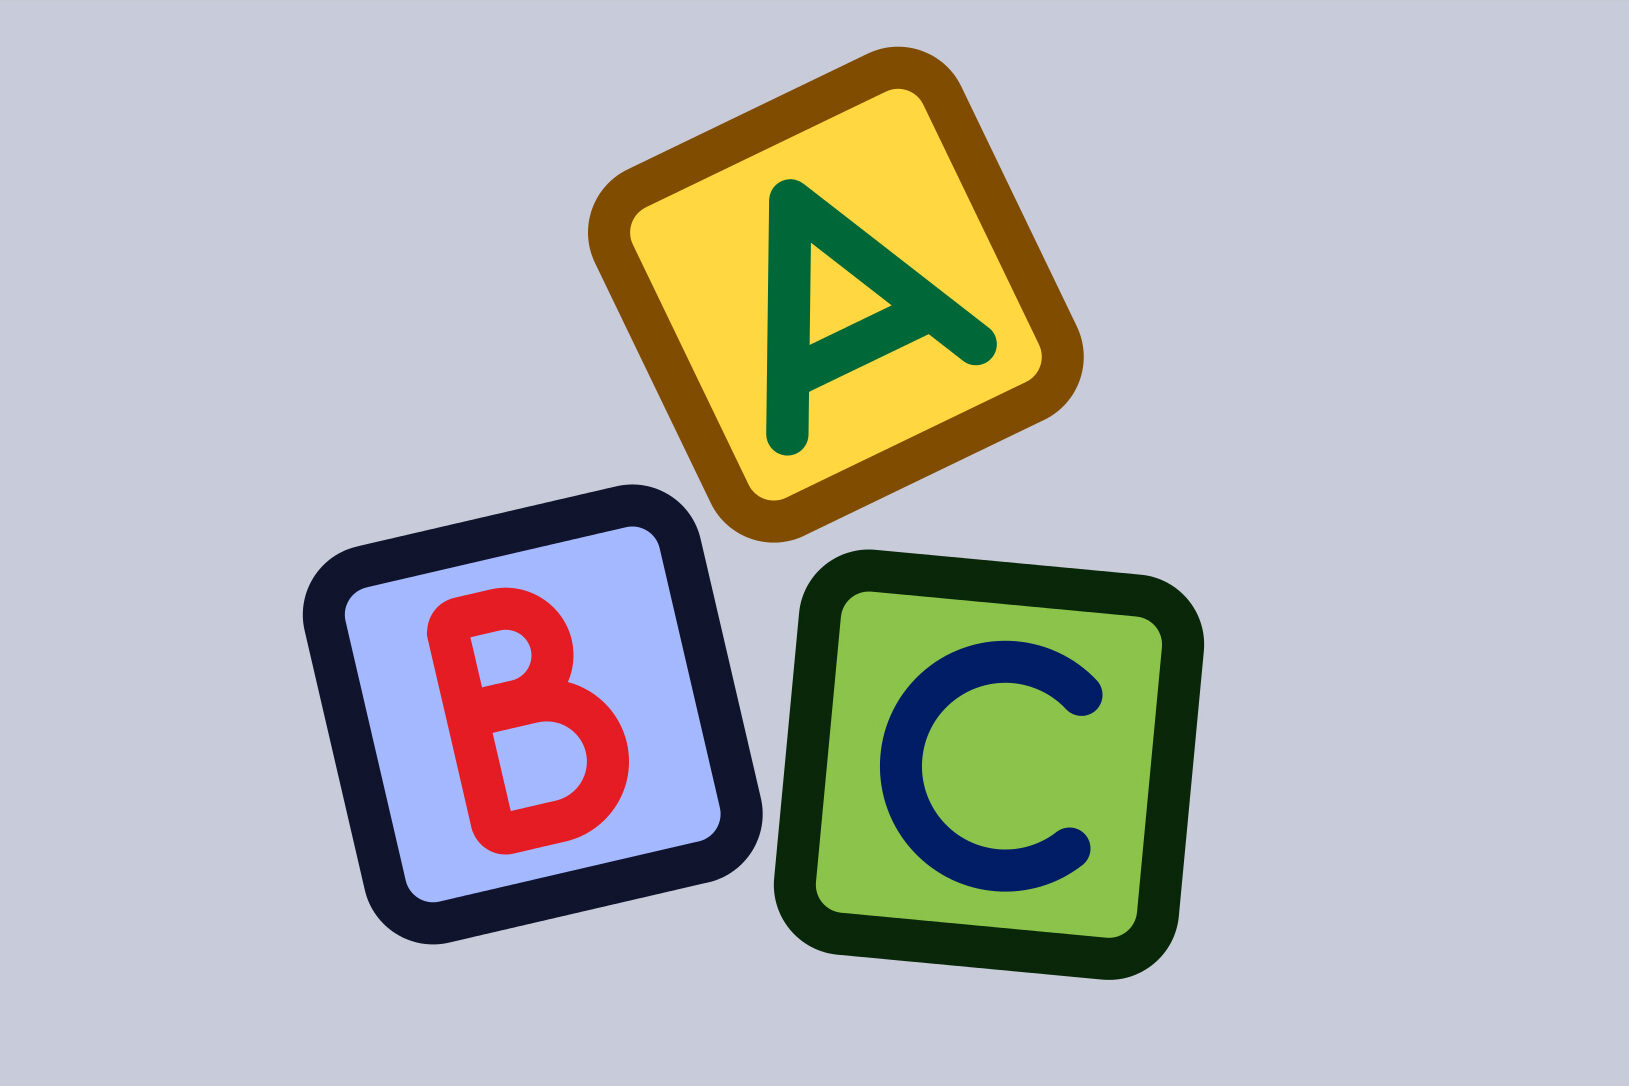 Grafische und bunte Darstellung der Buchstaben A, B, C.